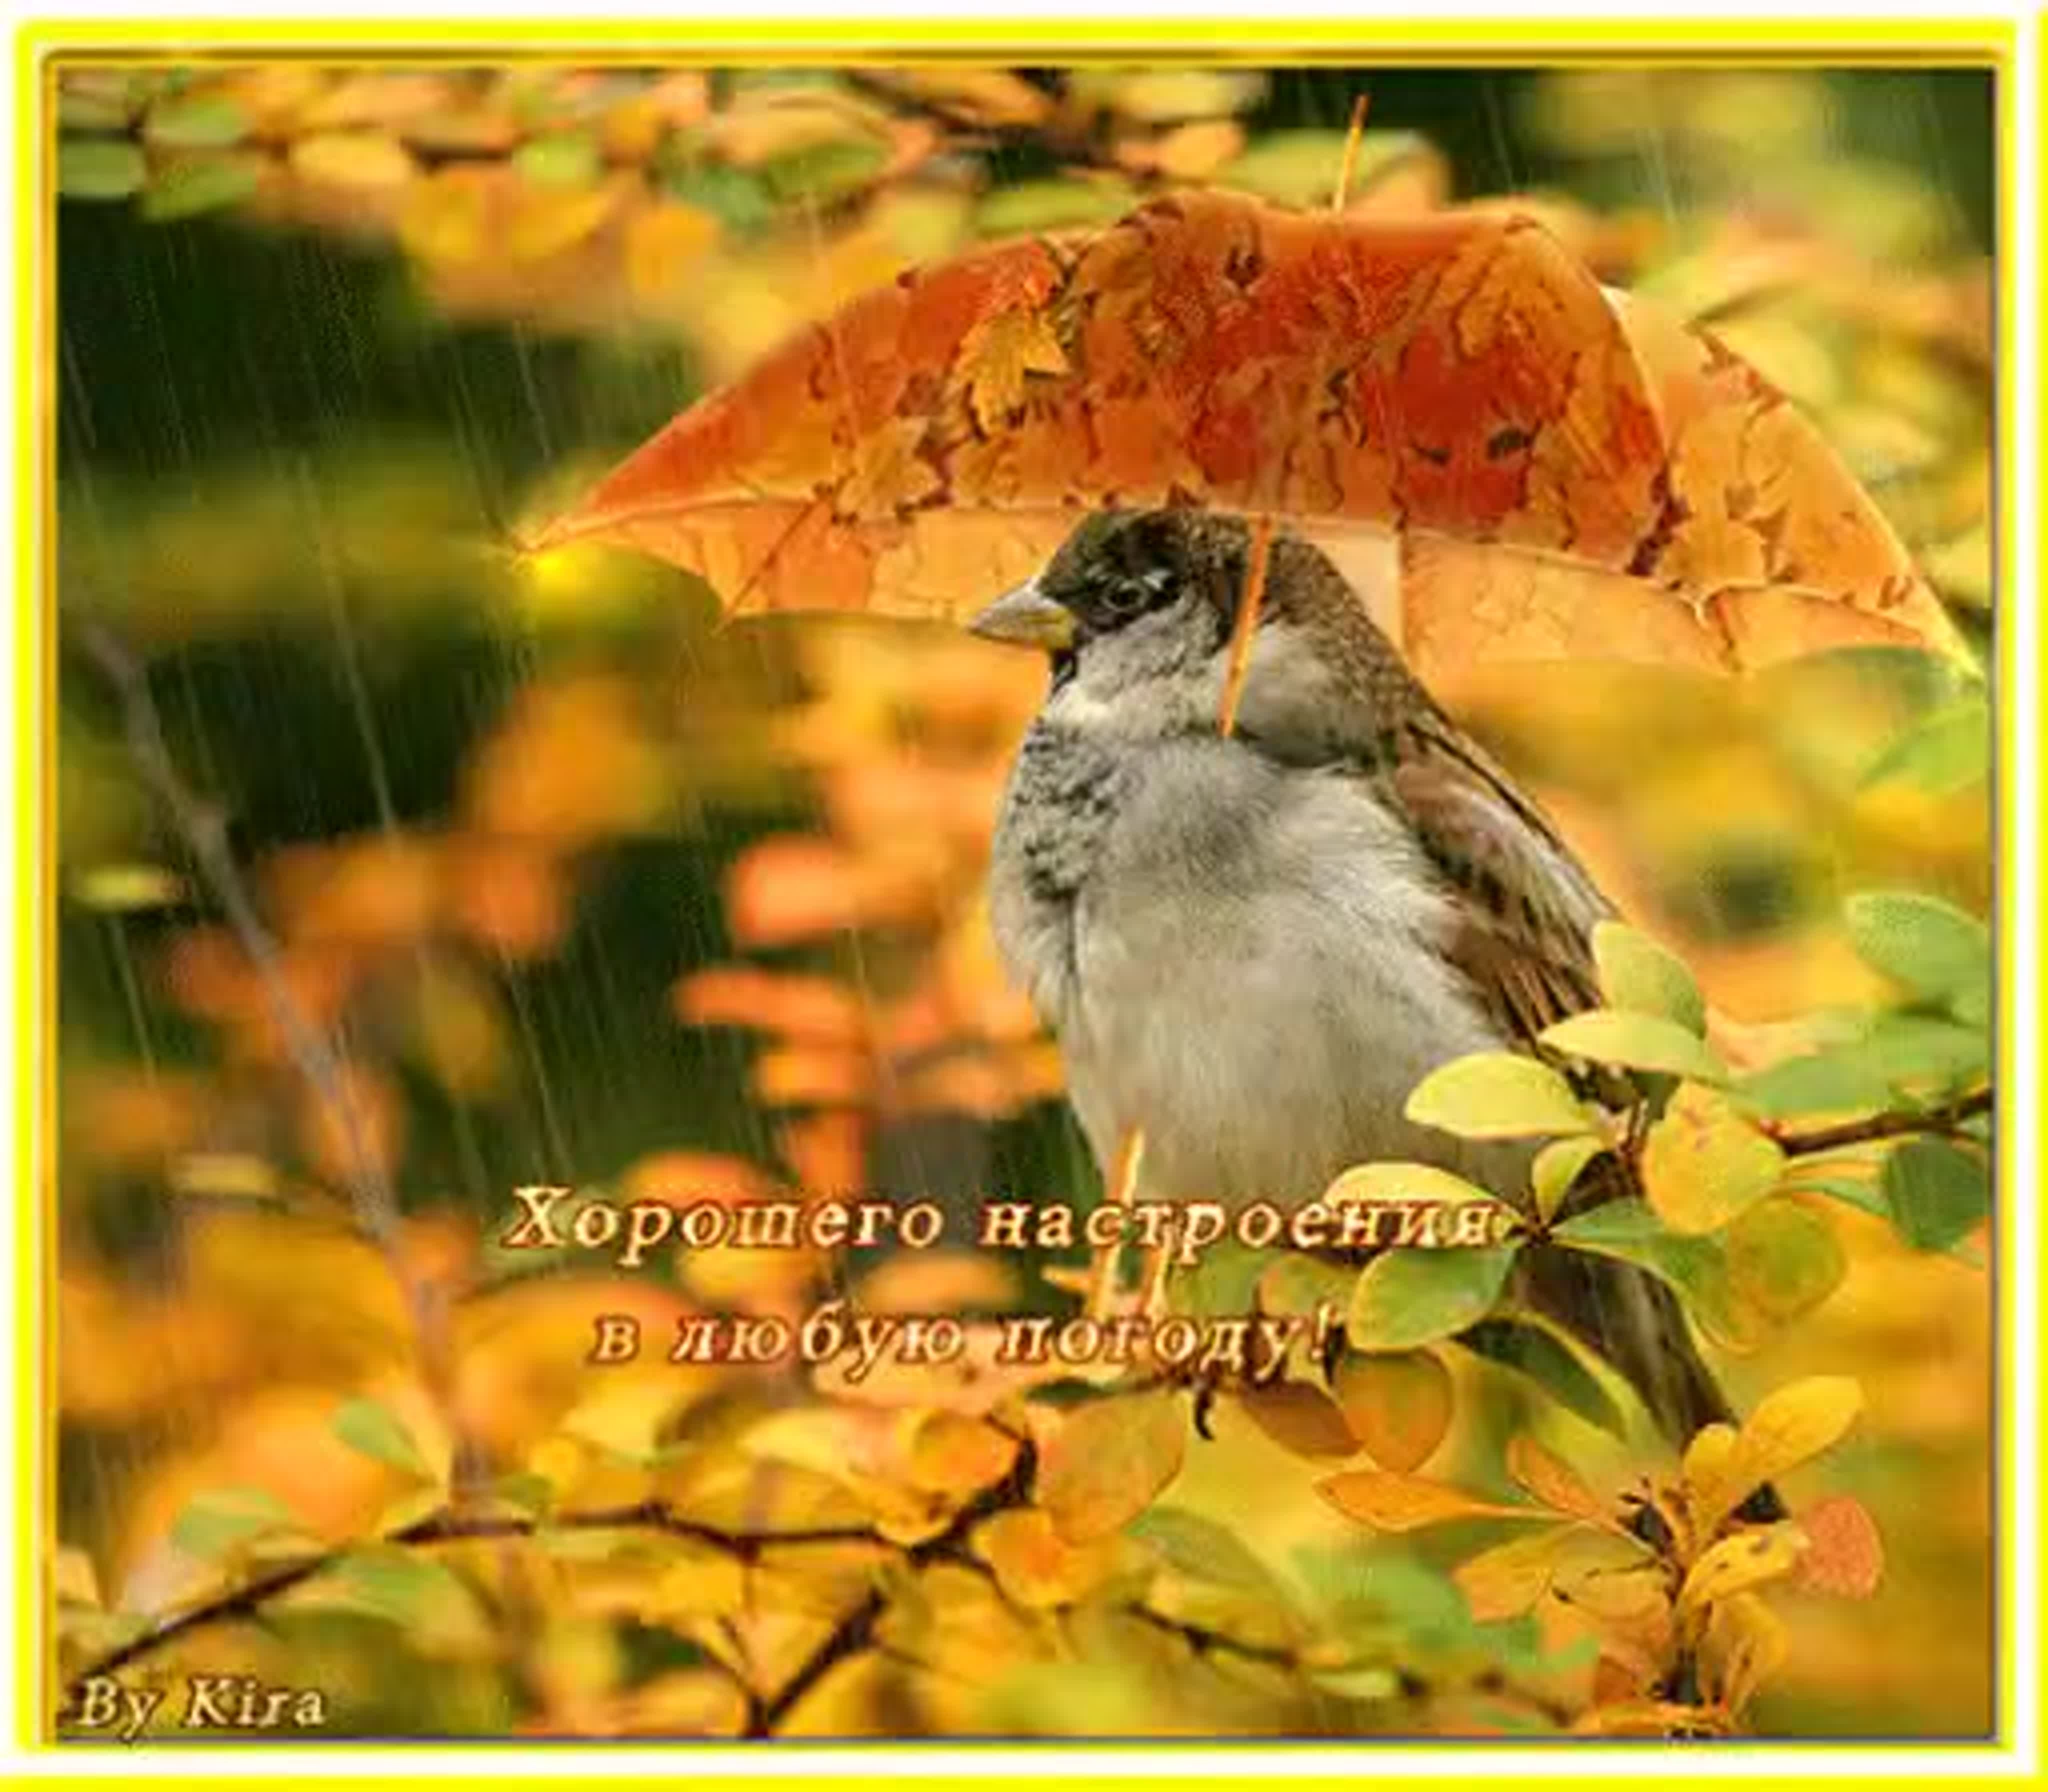 Осенью мы лучше видим и глазом. Осенние птицы. Хорошего настроенв любую погоду. Хорошего нас иоения в лю.ую МОГОДК. Хорошего настроения в любую п.